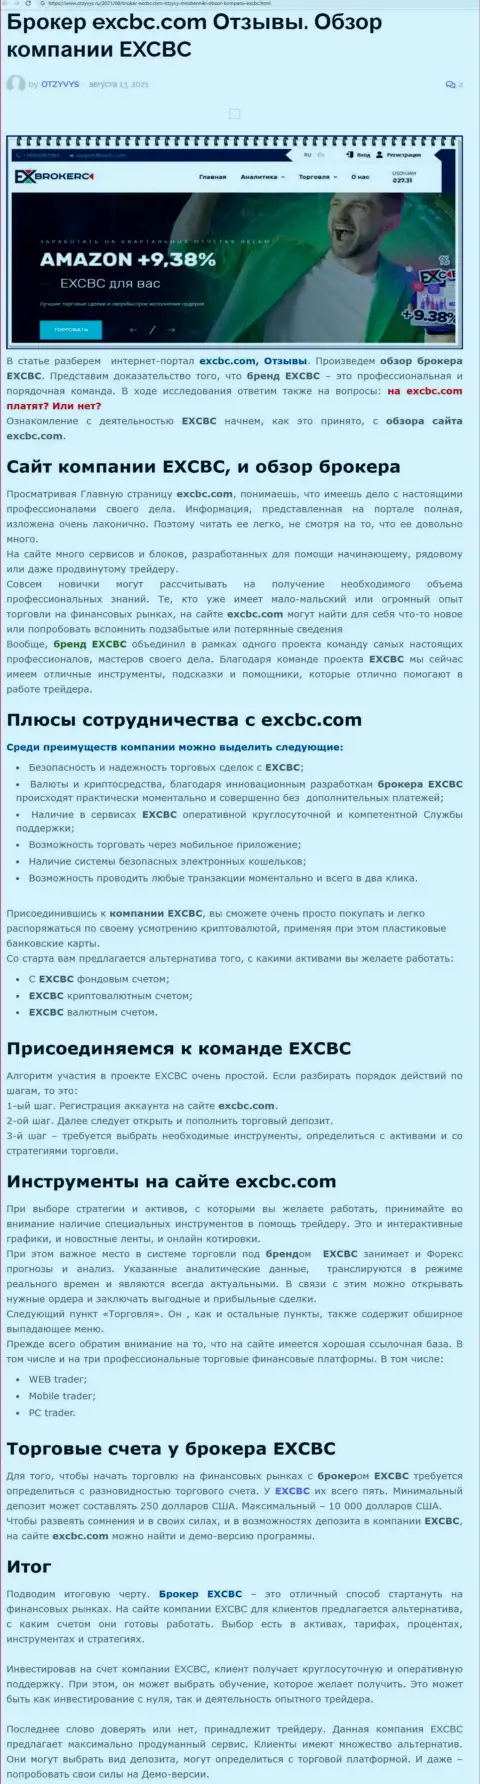 ЕХ Брокерс - честная и надежная Форекс брокерская организация, об этом можно узнать из информационного материала на web-сервисе otzyvys ru